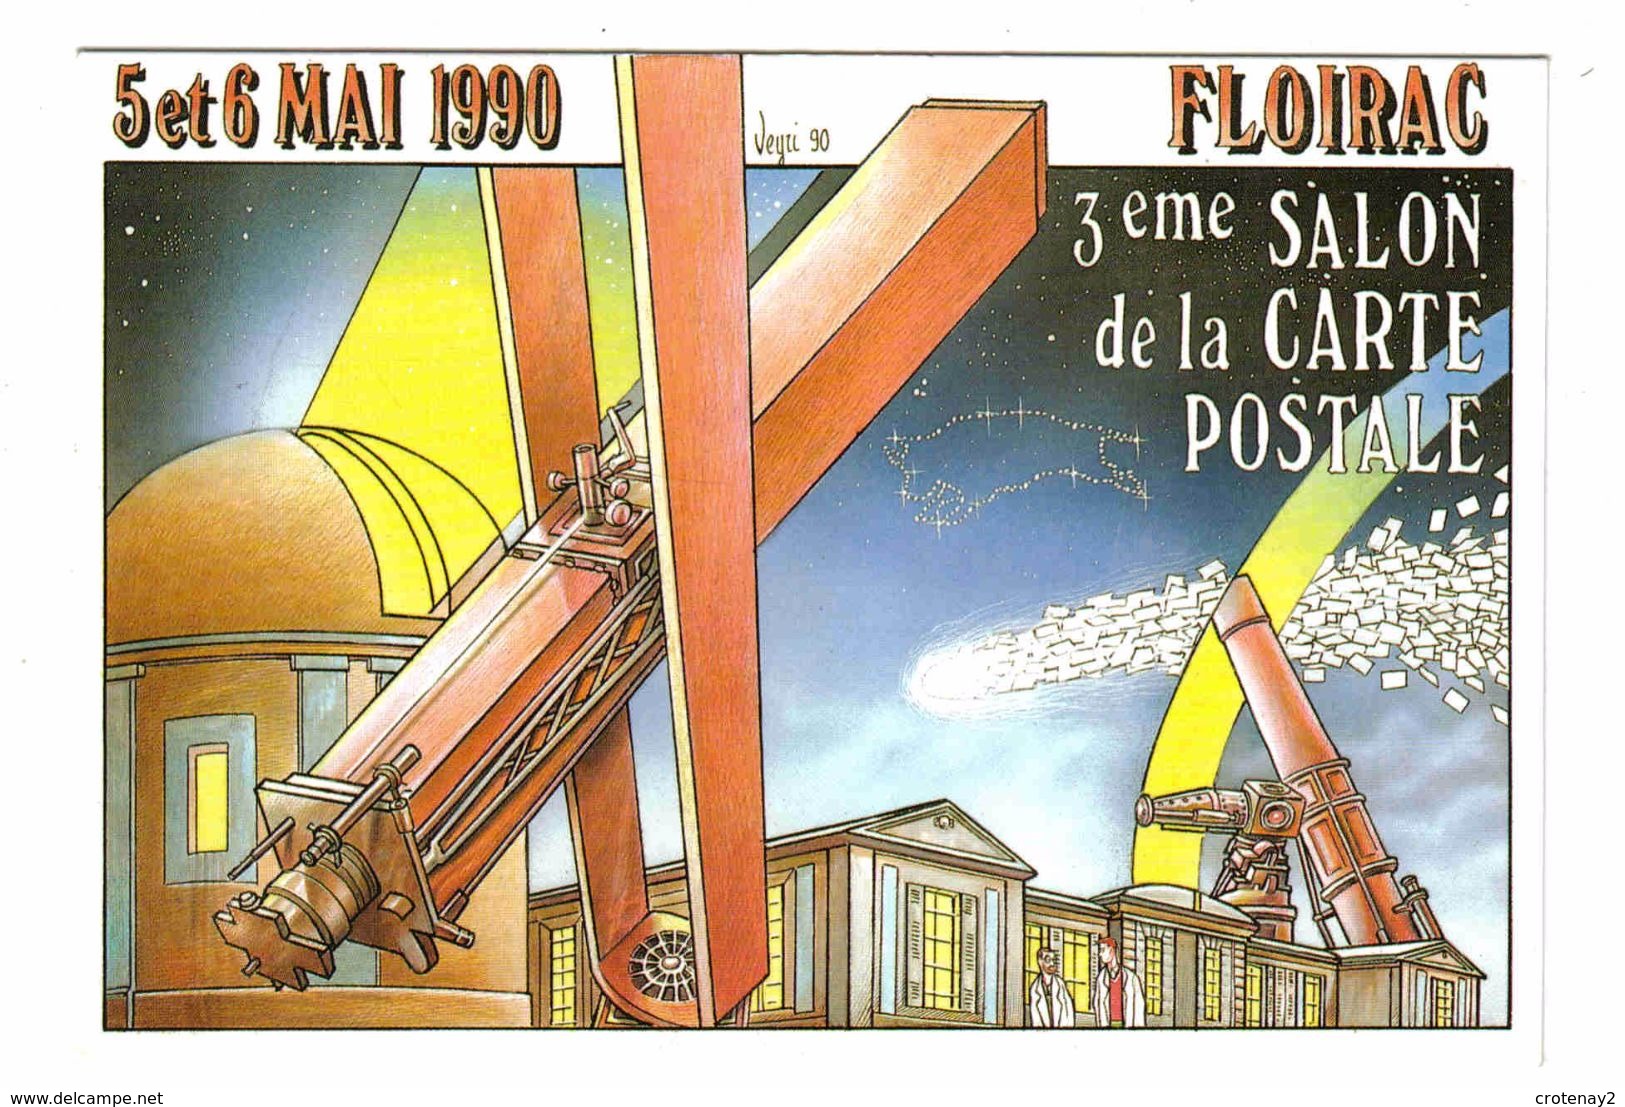 33 FLOIRAC Vers Bordeaux Salon Carte Postale Des 5 & 6 Mai 1990 Tirage Limité à 3000 Dessin Illustrateur Bernard Veyri - Bordeaux